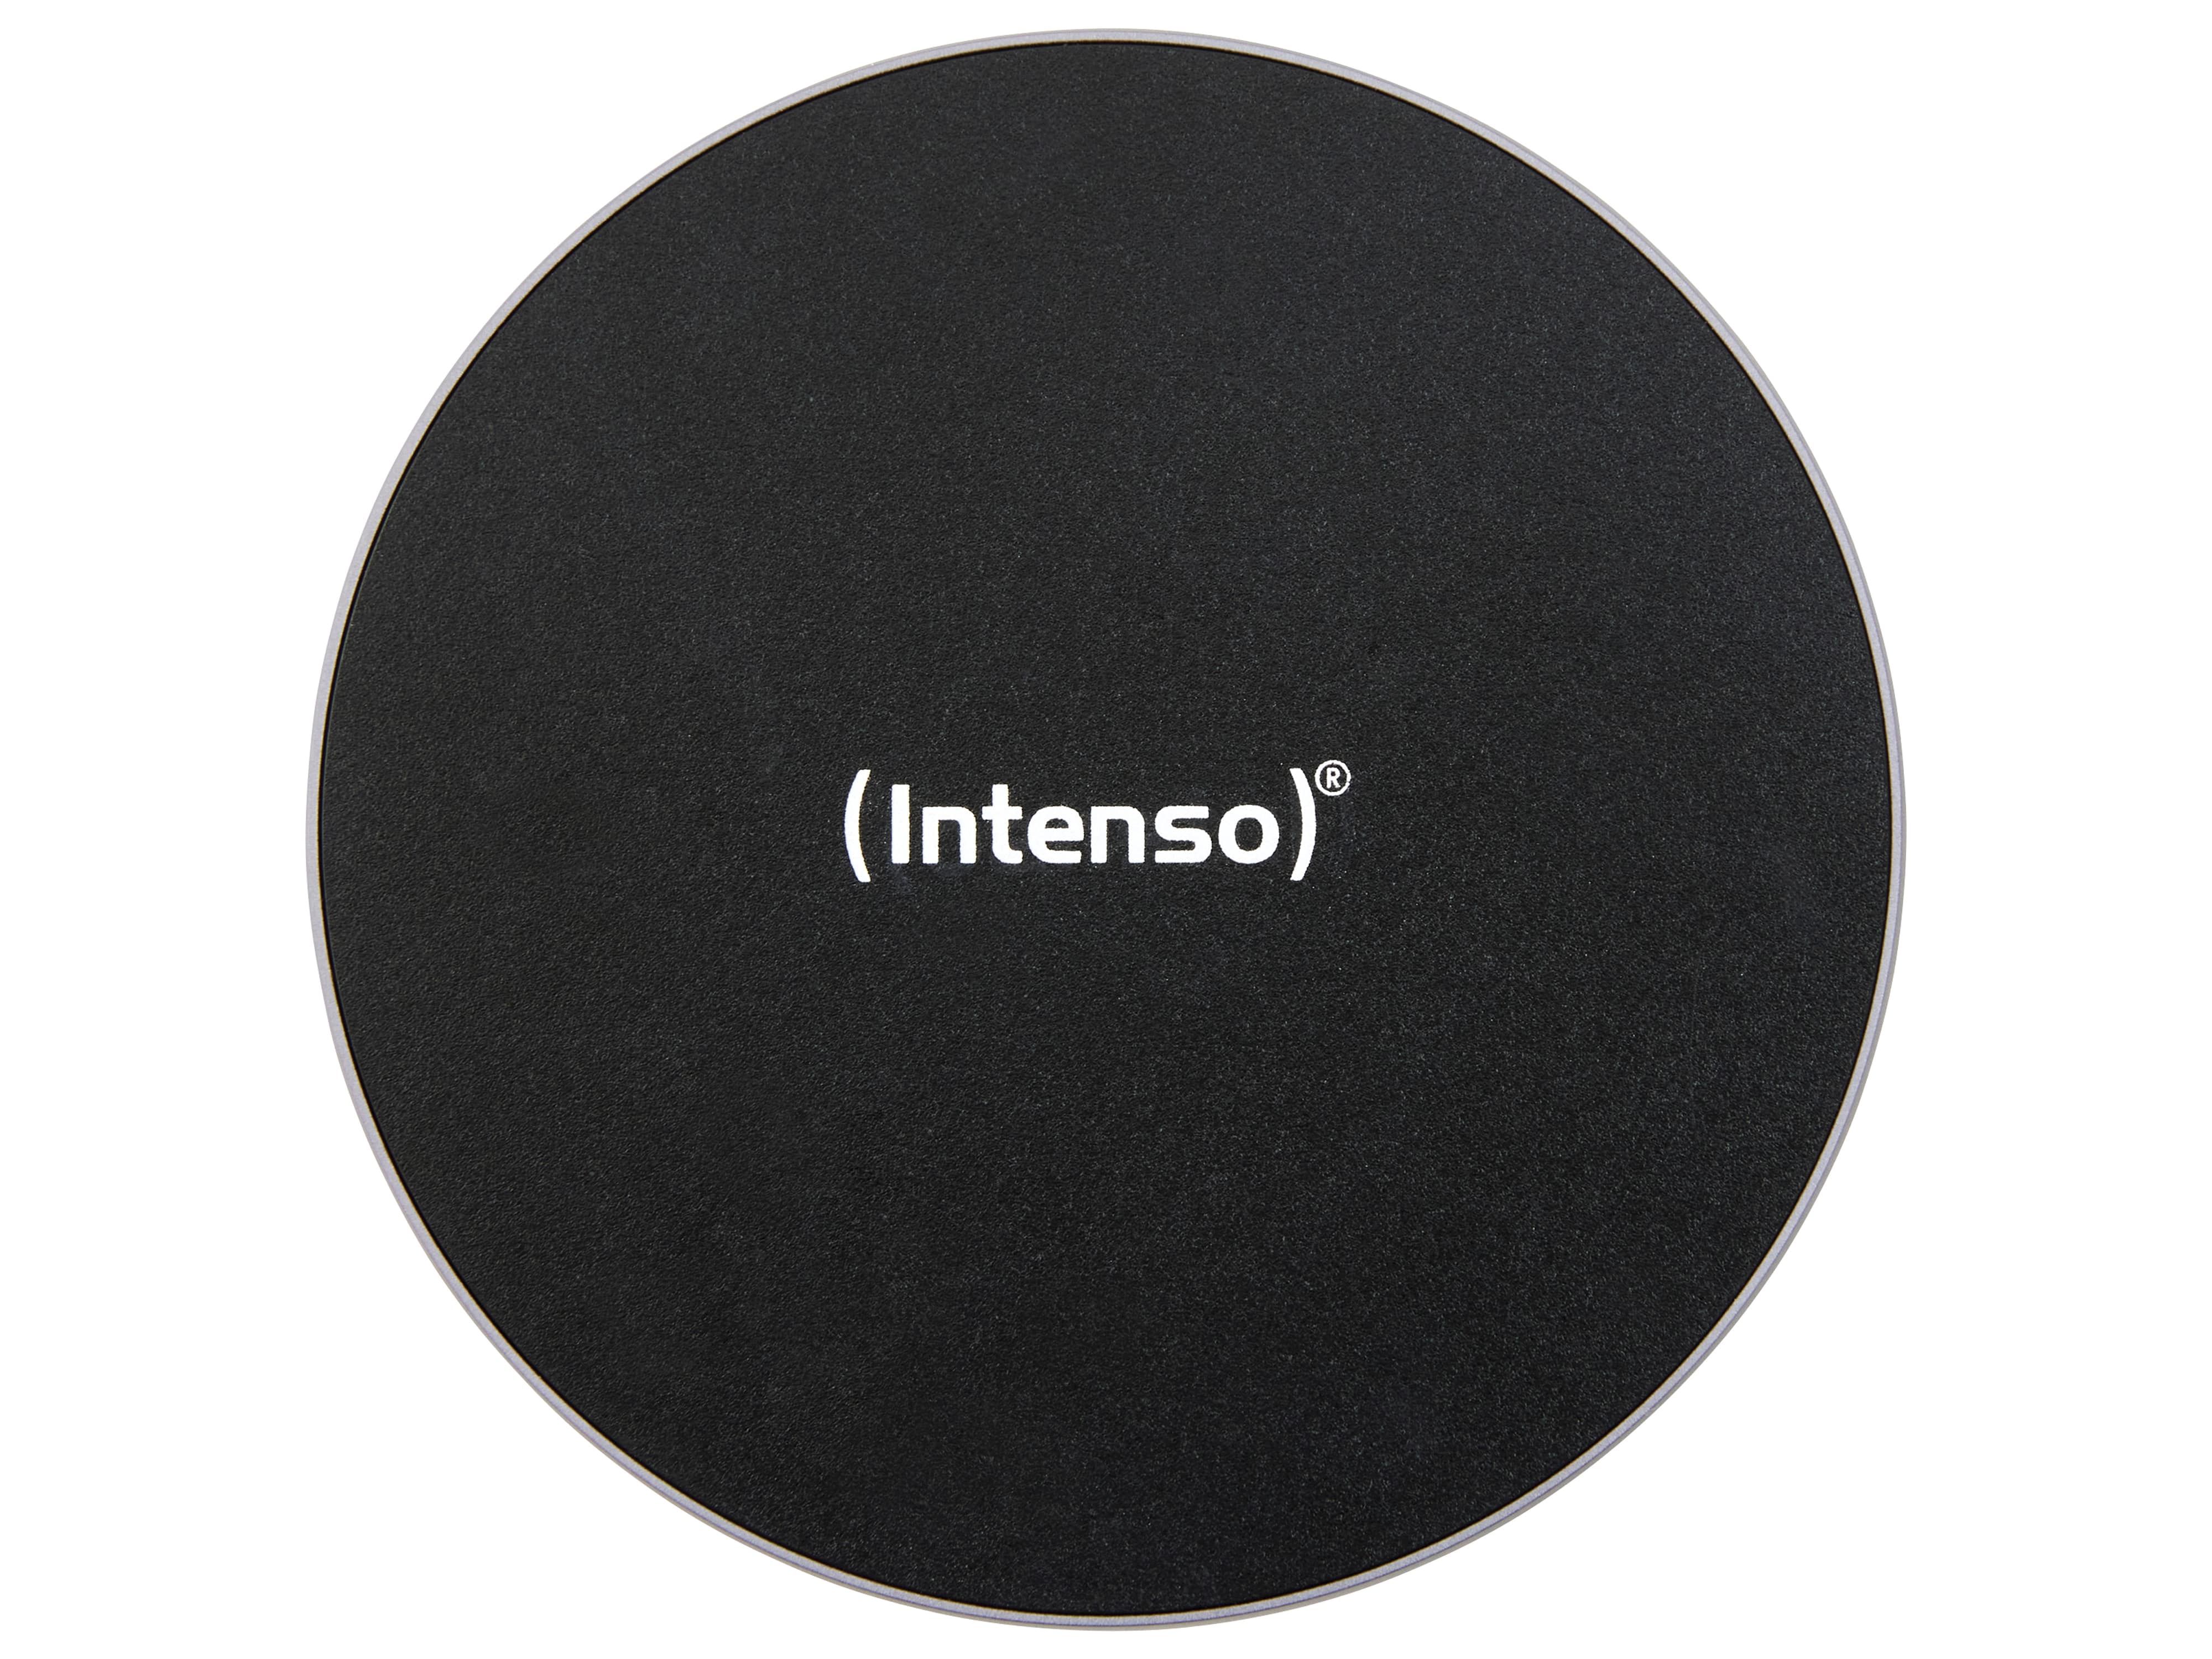 INTENSO Induktions-Ladegerät 7410520 BA2, schwarz